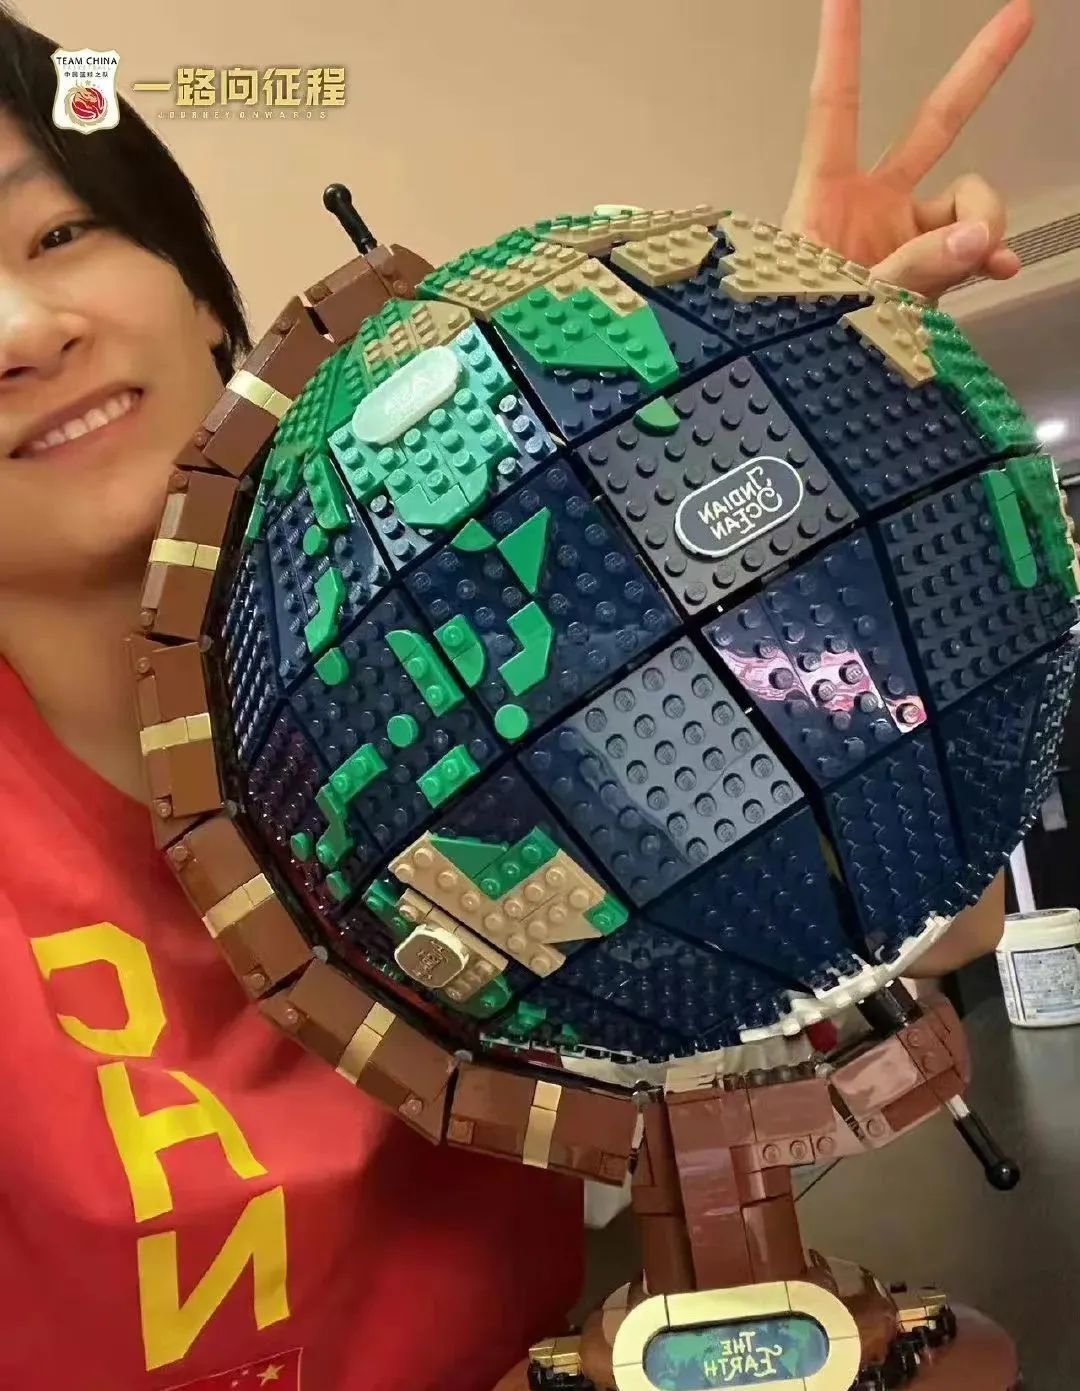 队长杨力维和她拼好的地球仪 图源中国篮球之队微博